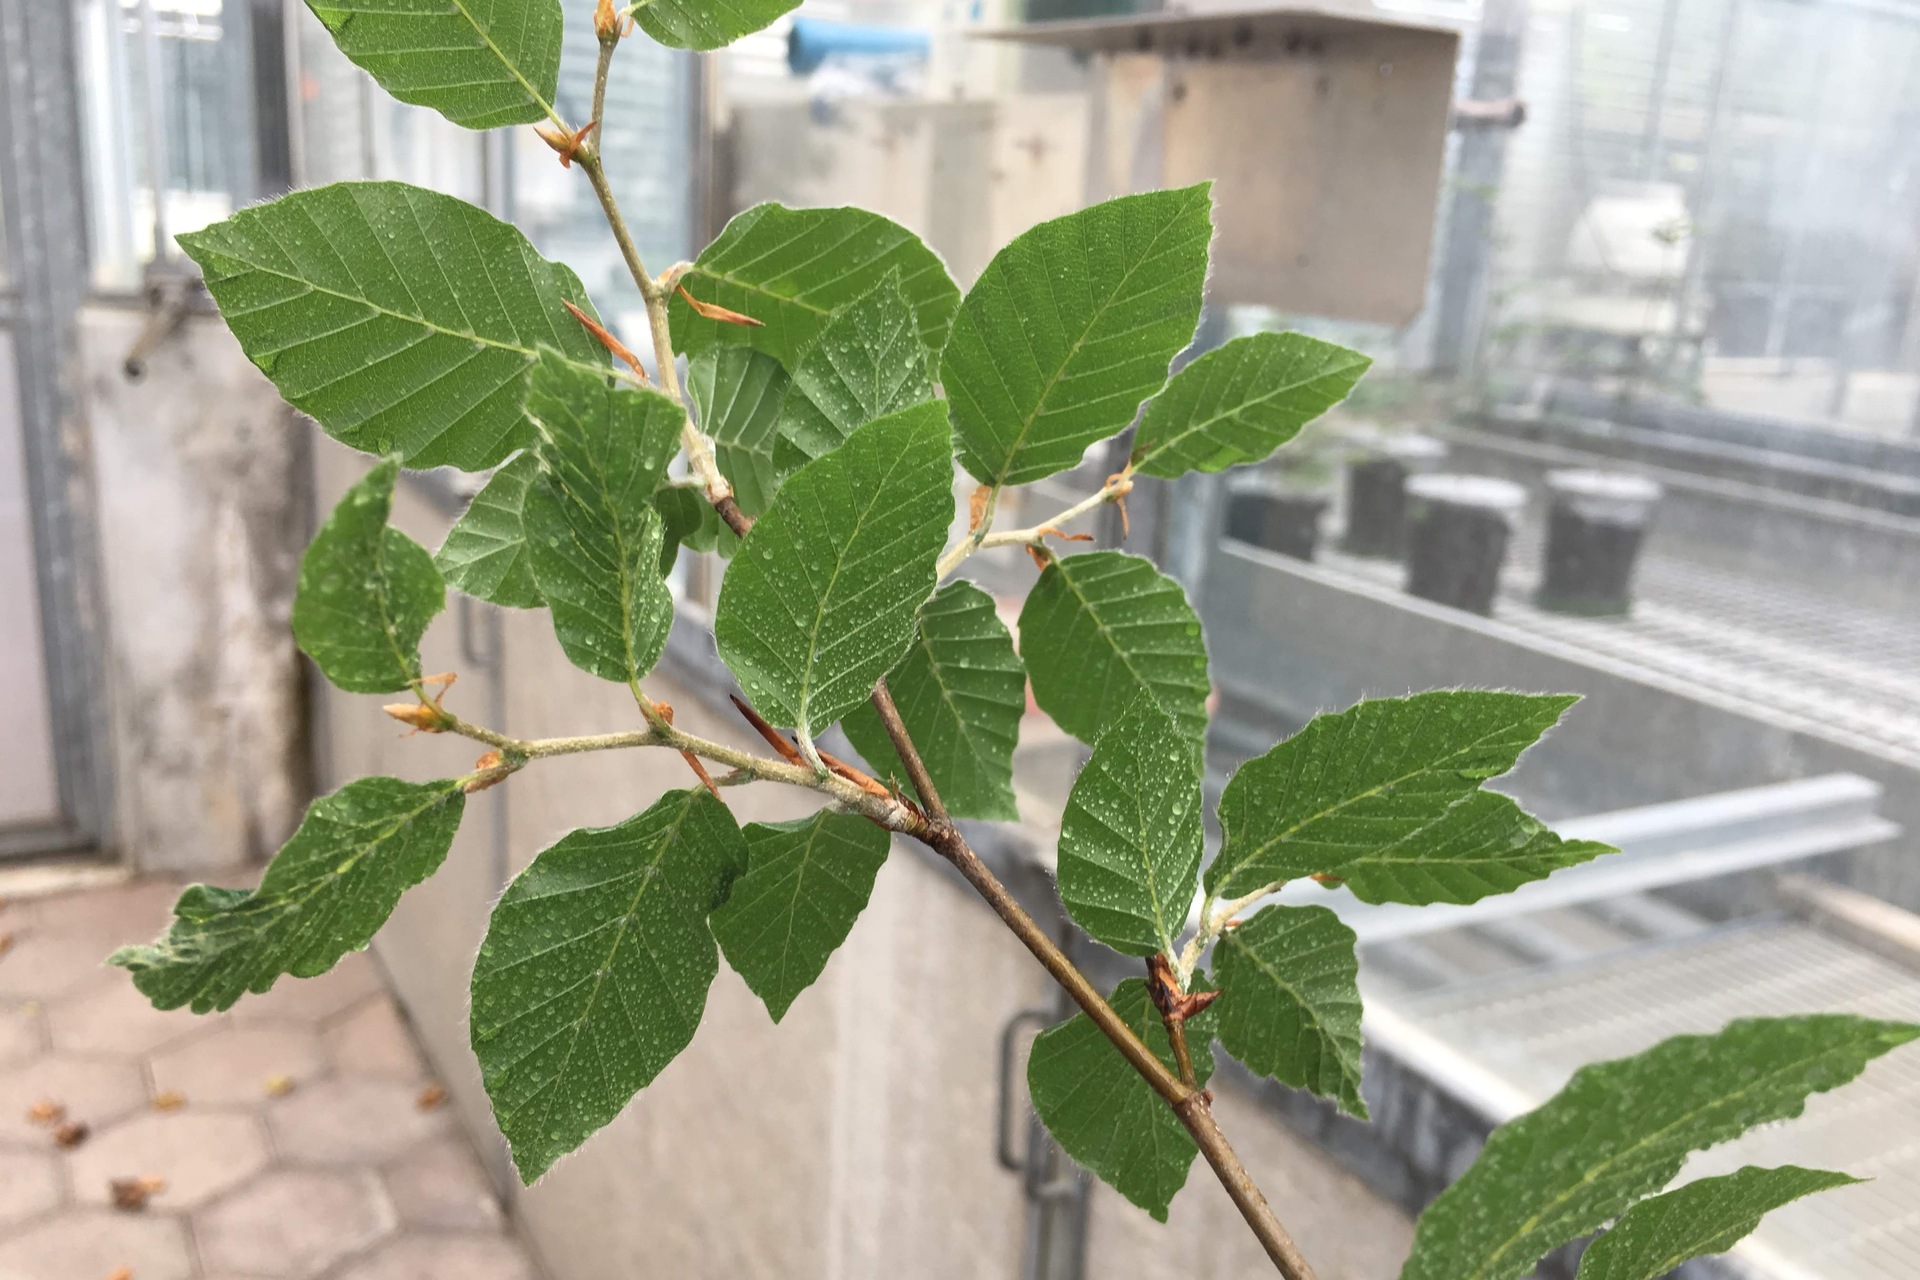 Alberi: le nanoparticelle si attaccano alle foglie, ma le penetrano anche?